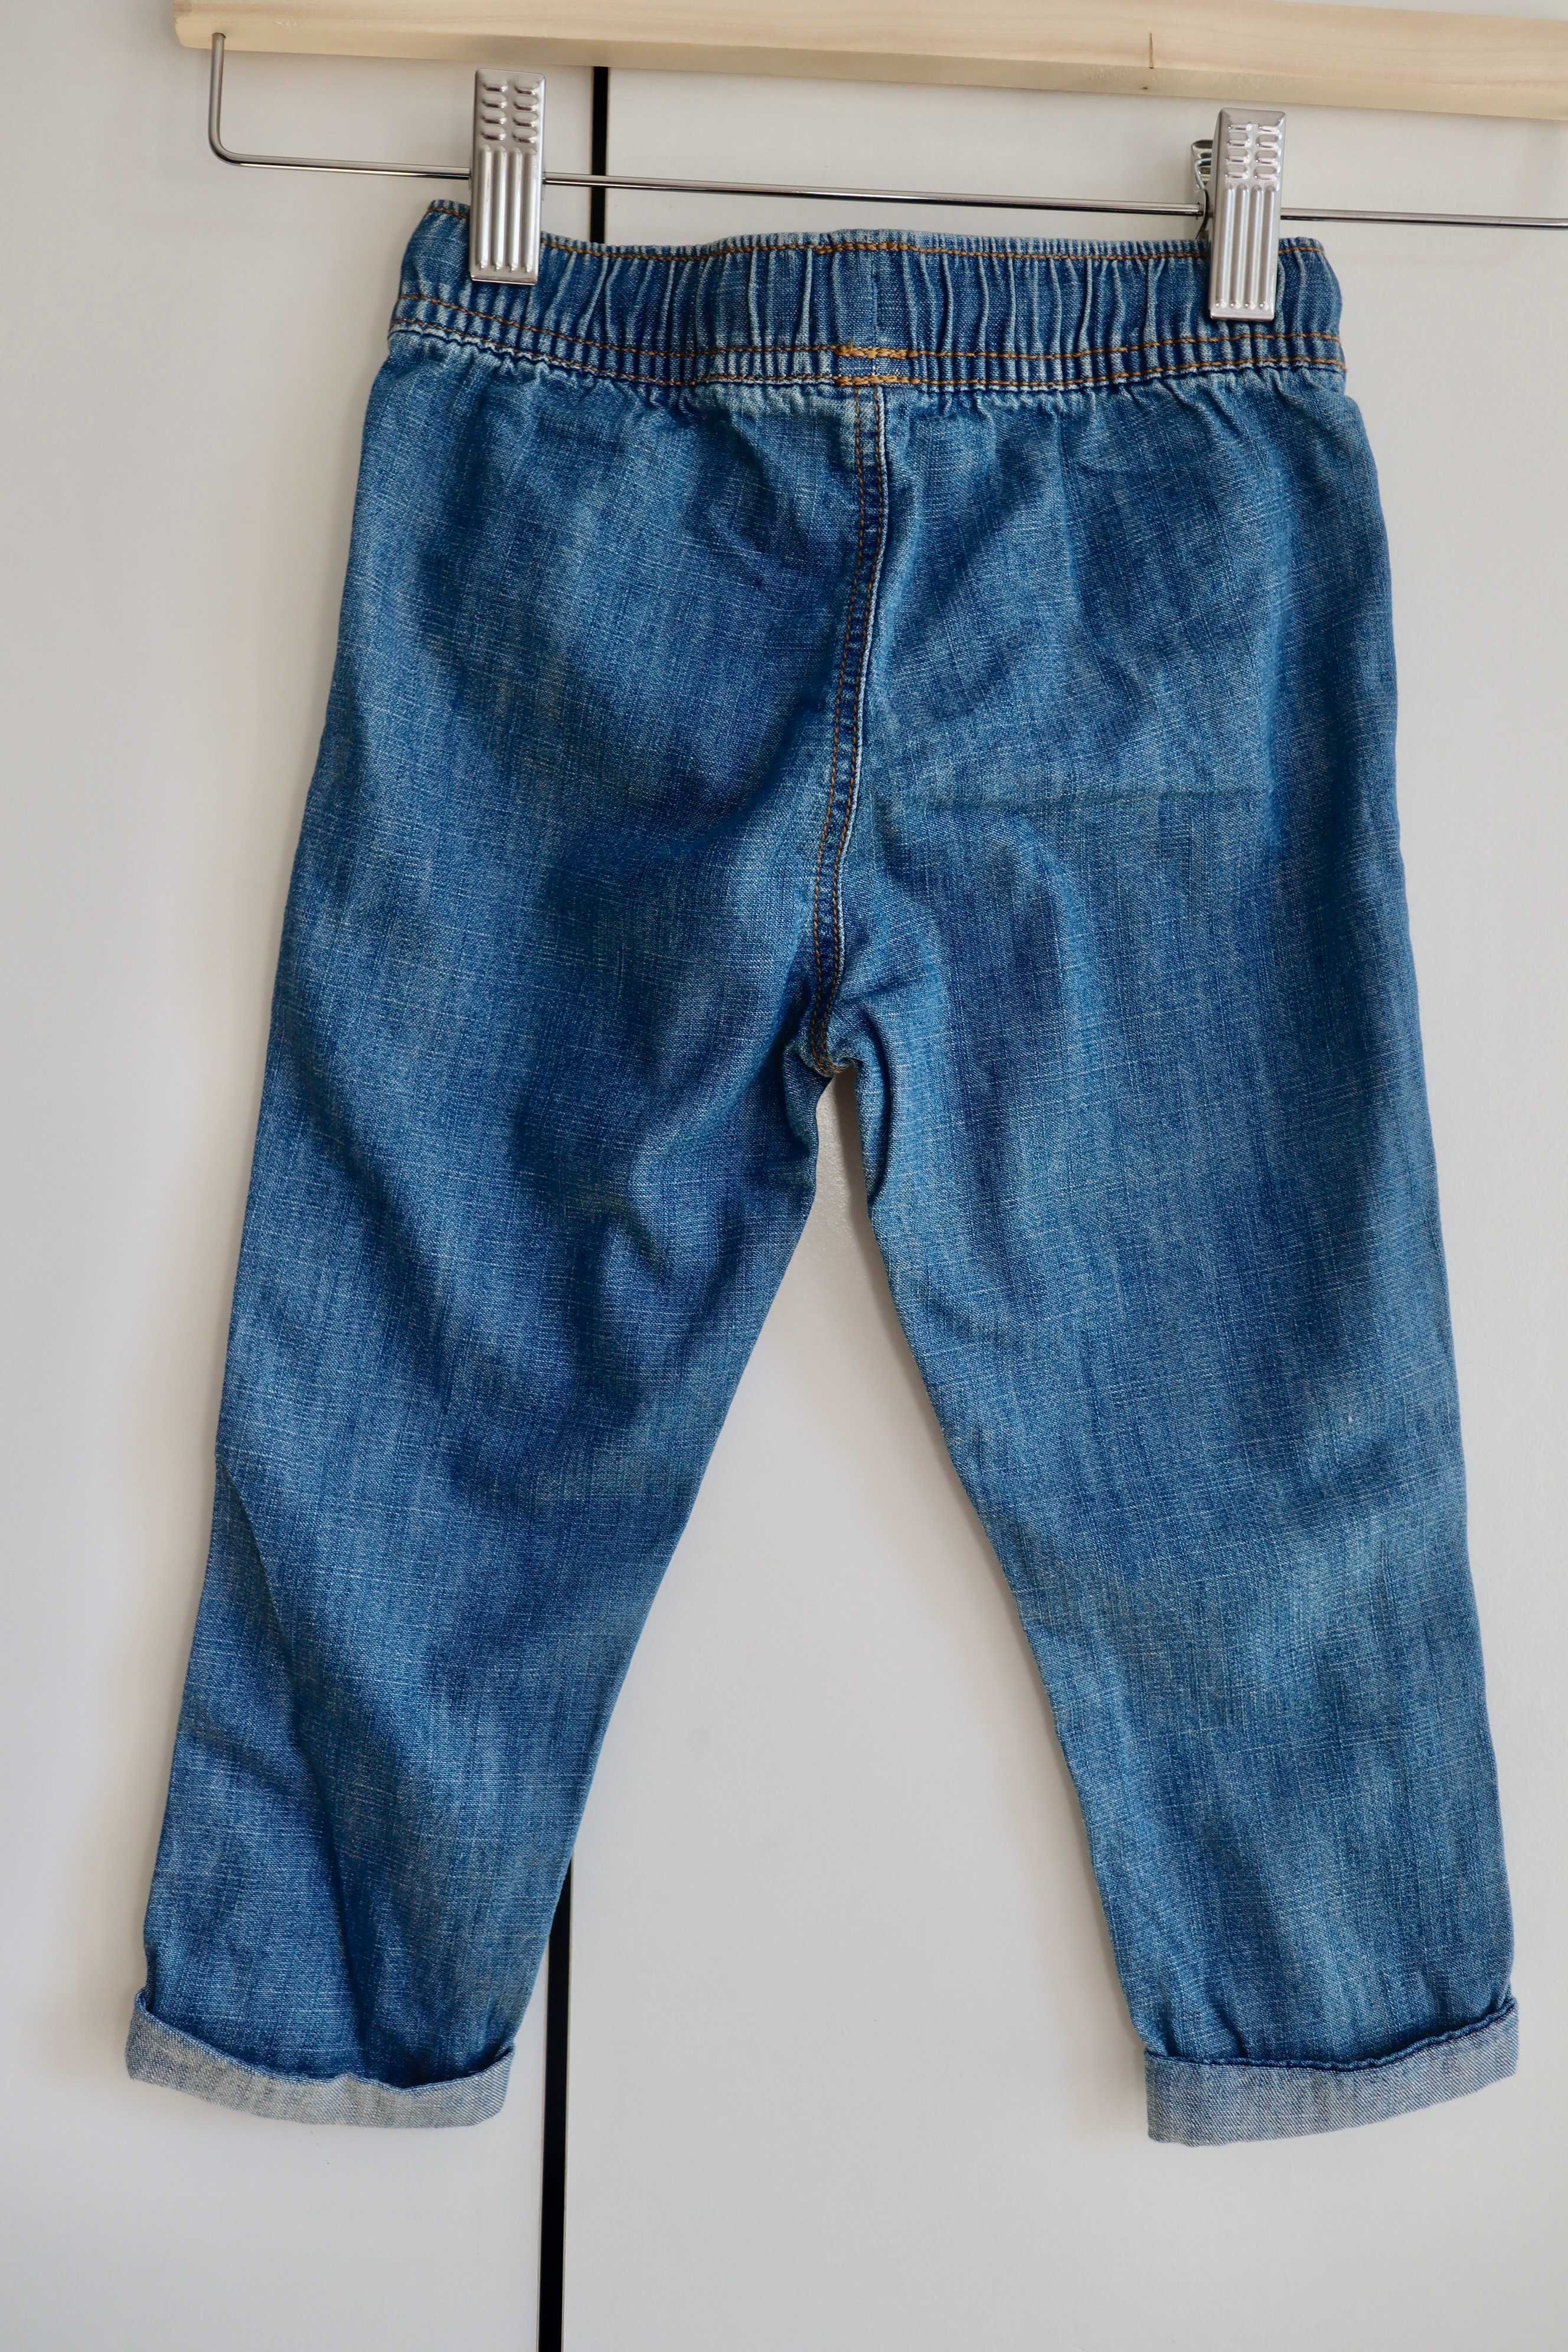 Spodnie jeansowe chłopięce rozmiar 80-86, nowe #124